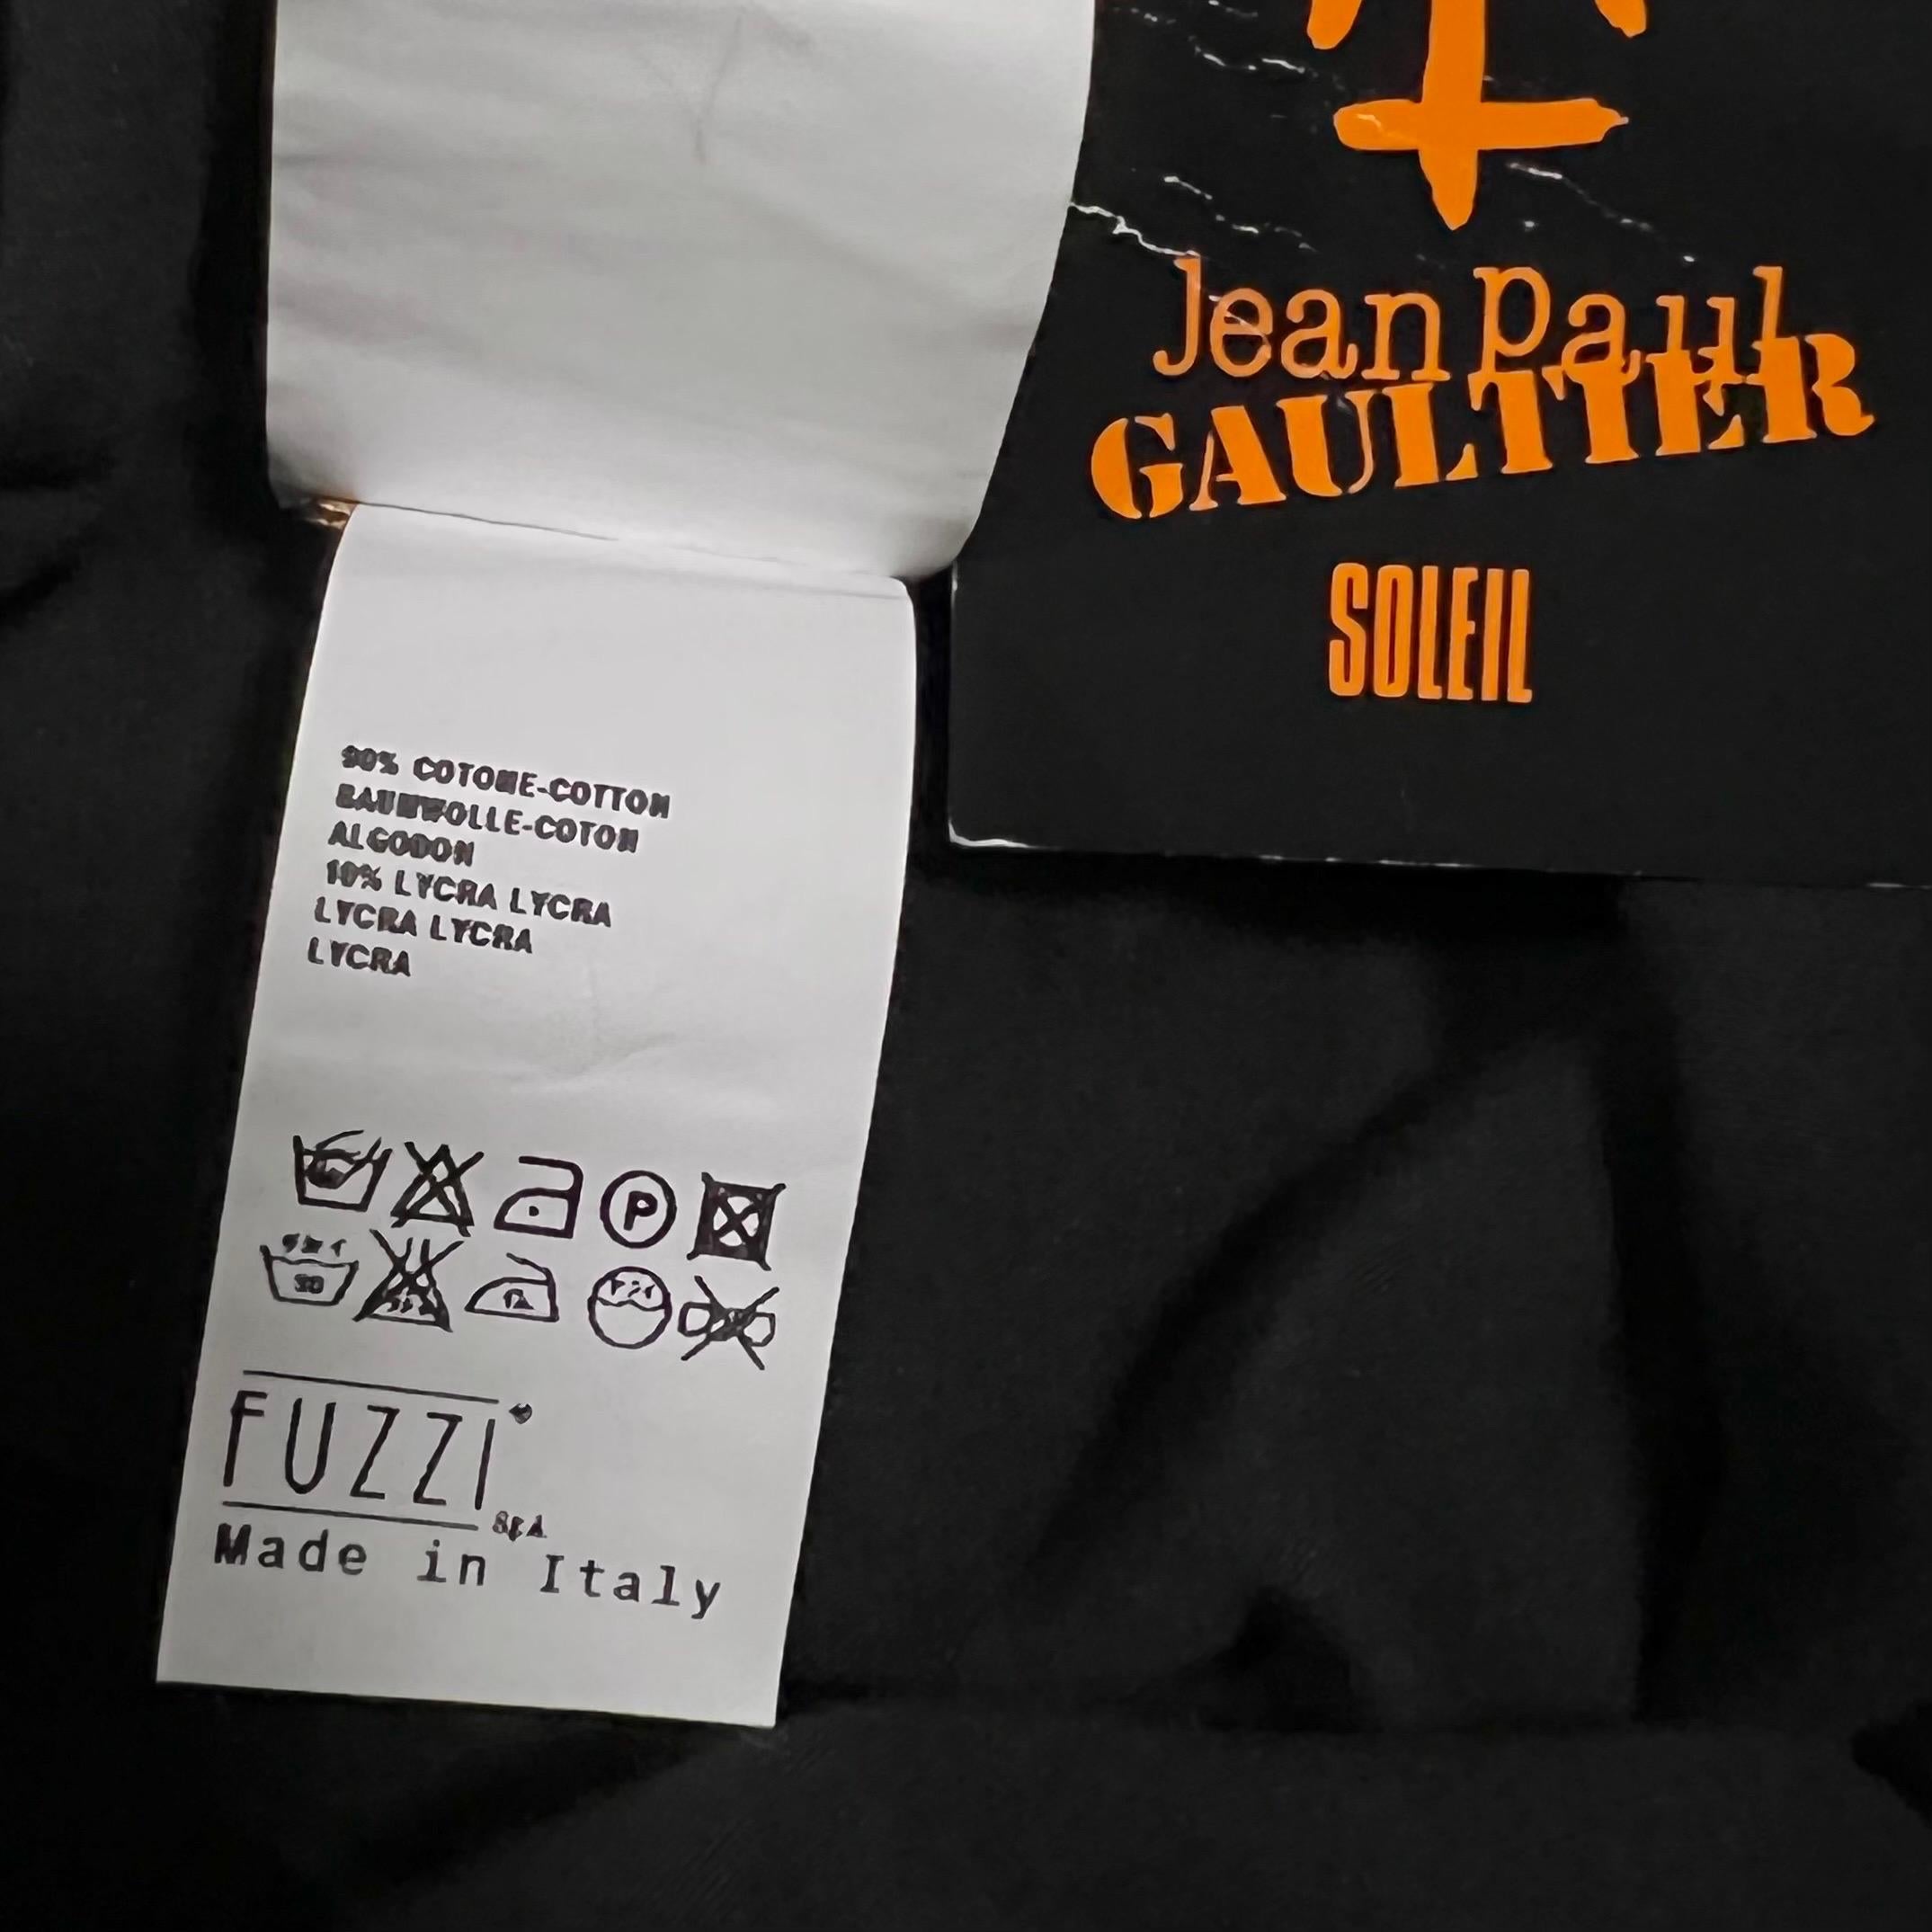 S/S 2001 Jean Paul Gaultier Soleil Black Cutout Fishnet Gown For Sale 4